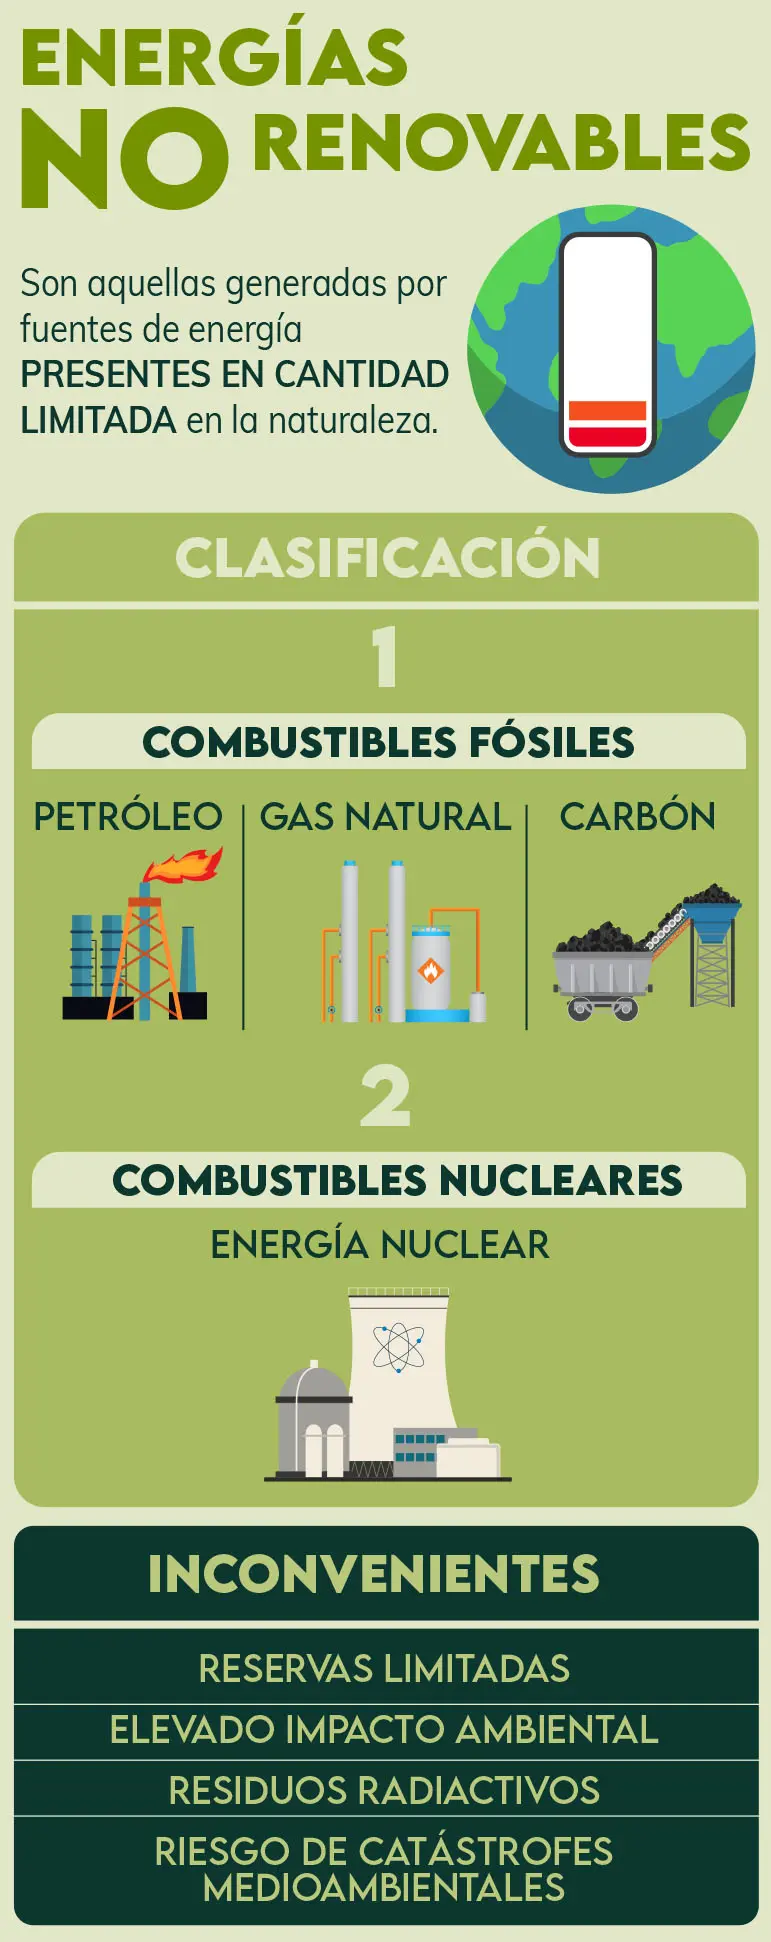 definicion de carbon energía no renovable - Qué es el carbón y sus características